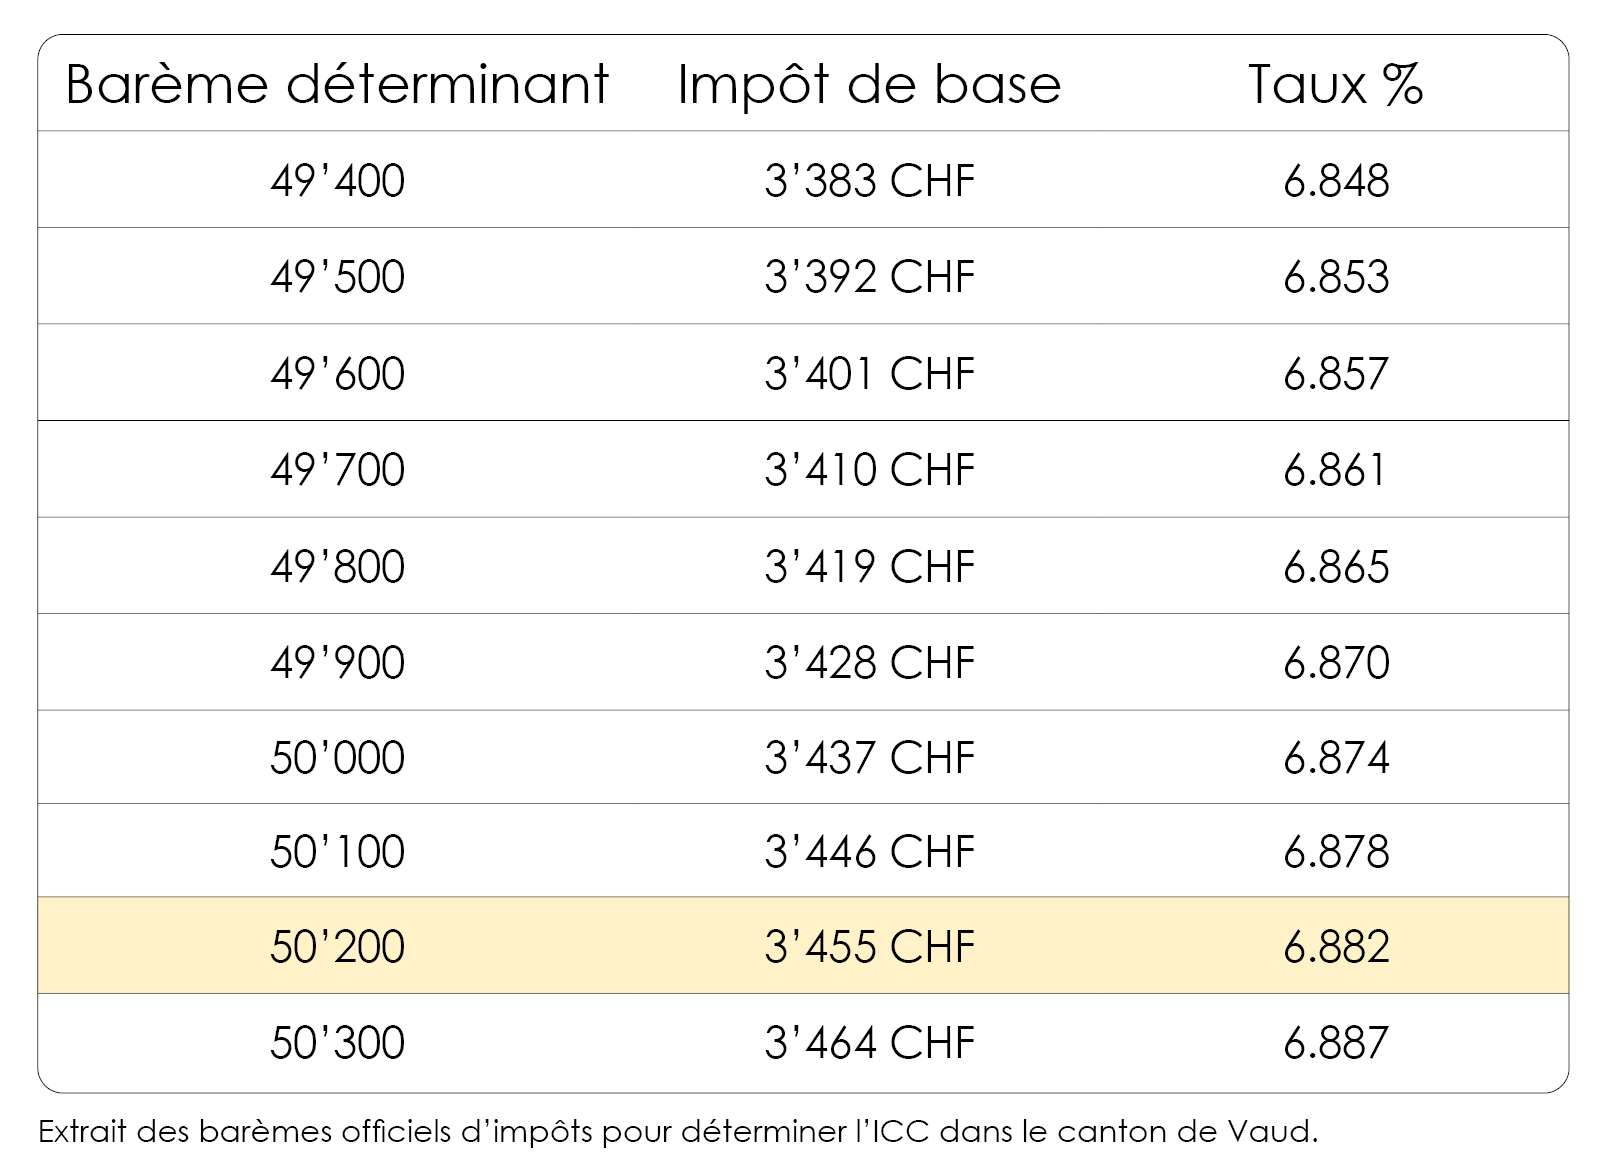 Extrait du barème d'impôt du canton de Vaud pour détermine l'impôt ICC. 